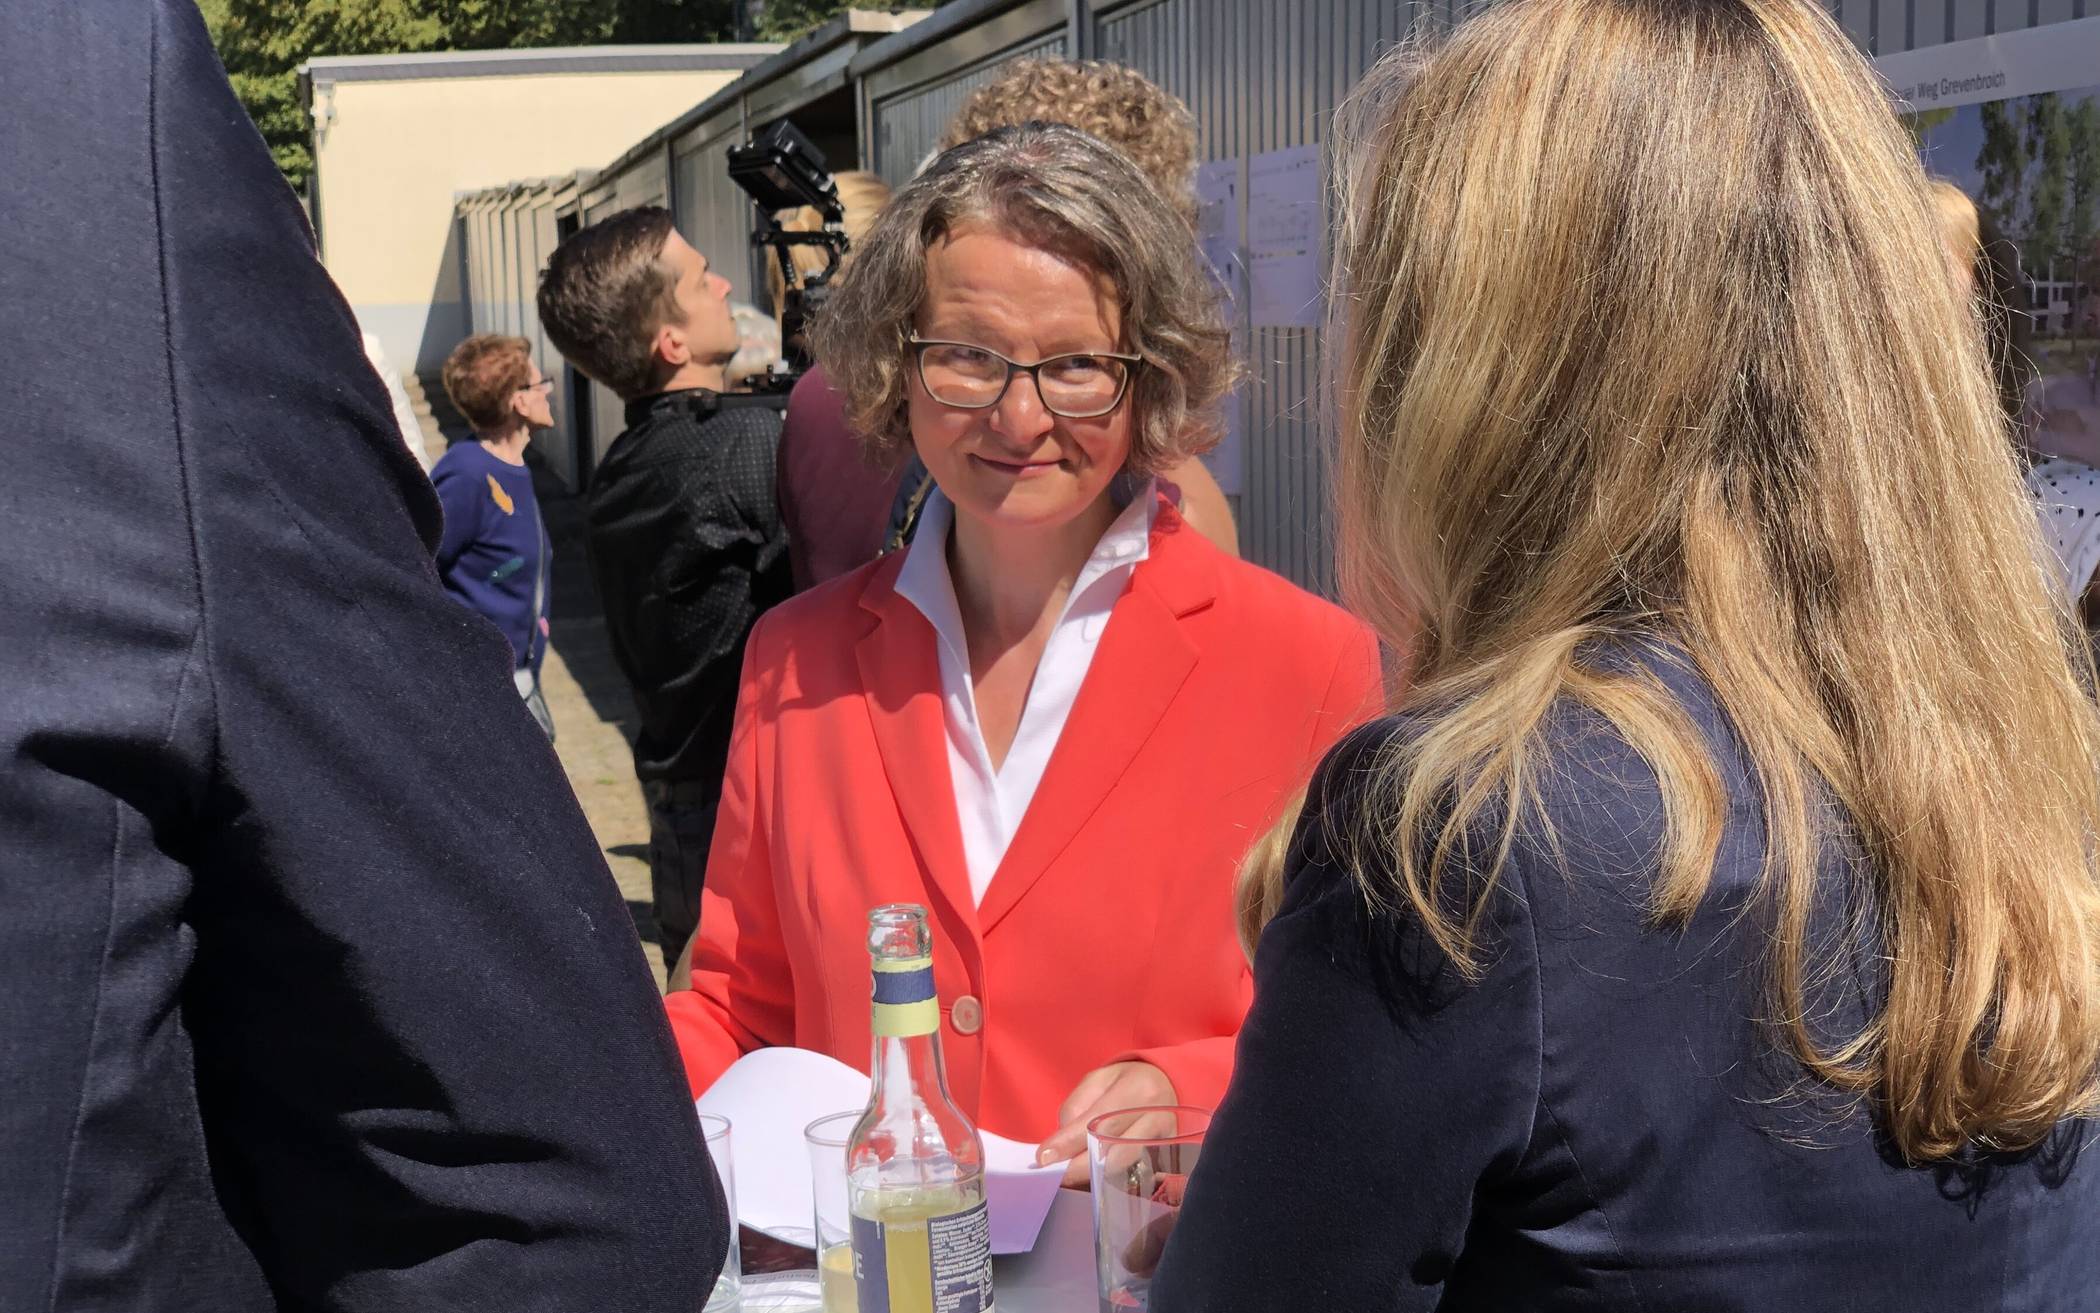  Ina Scharrenbach, Ministerin für Heimat, Kommunales, Bau und Digitalisierung, bei einem Besuch in Grevenbroich.  Foto: -gpm.  